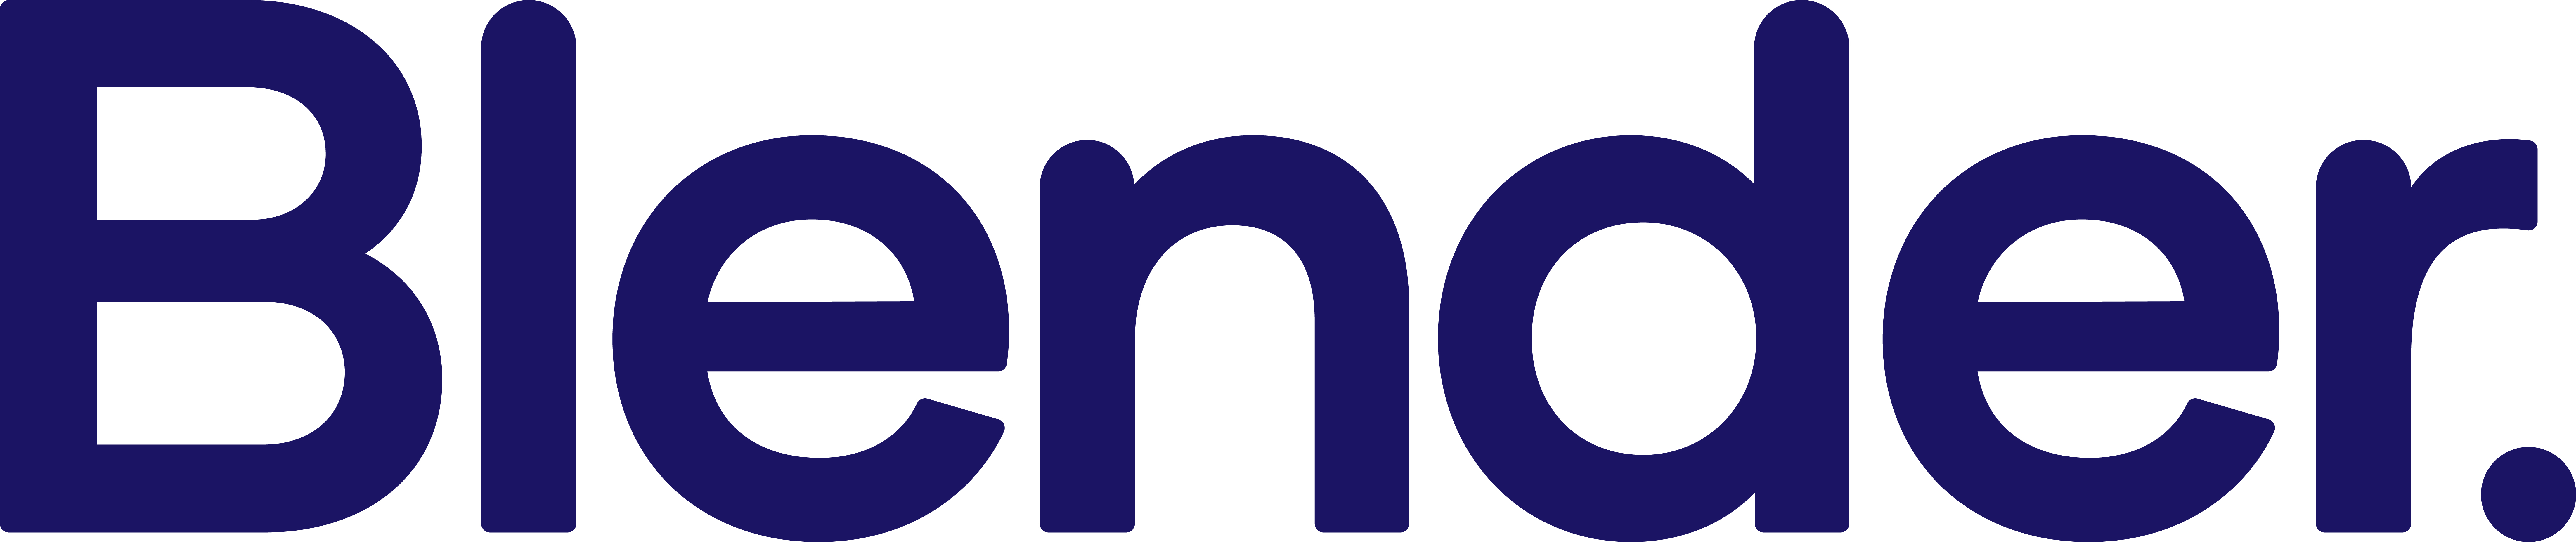 Blender Logotype BLUE